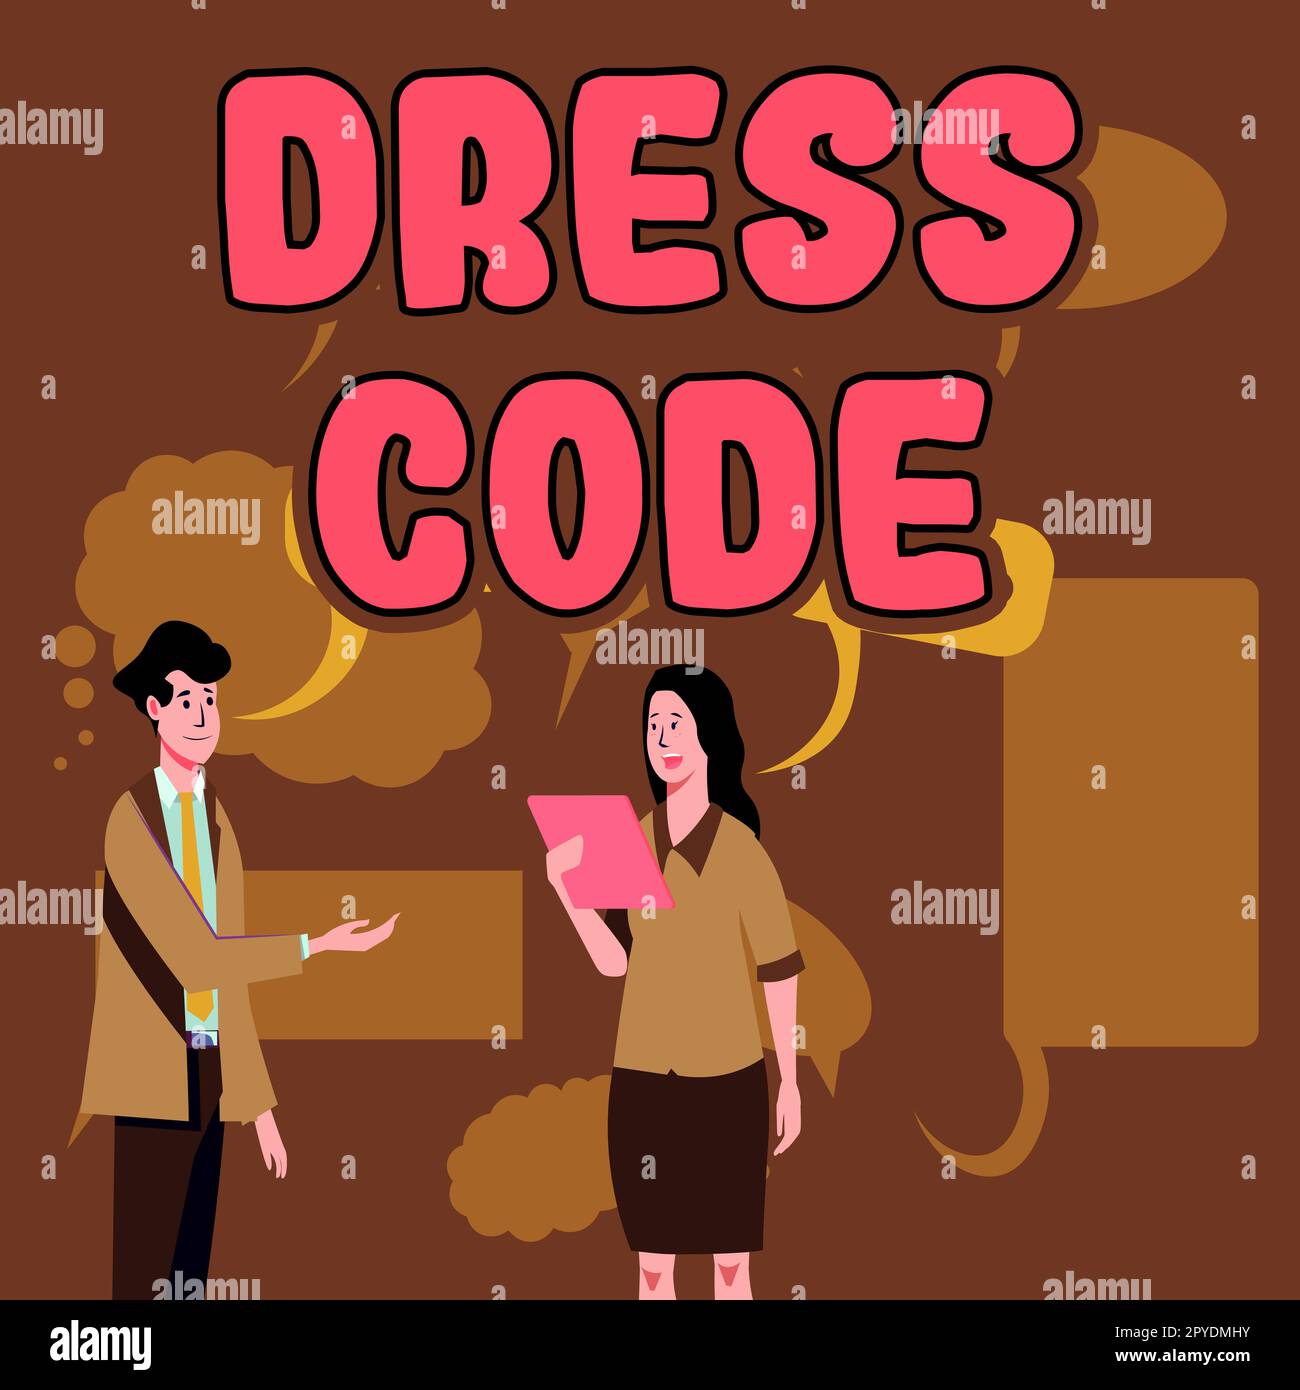 Code vestimentaire d'affichage conceptuel. Mot écrit sur une façon acceptée de s'habiller pour une occasion ou un groupe particulier Banque D'Images